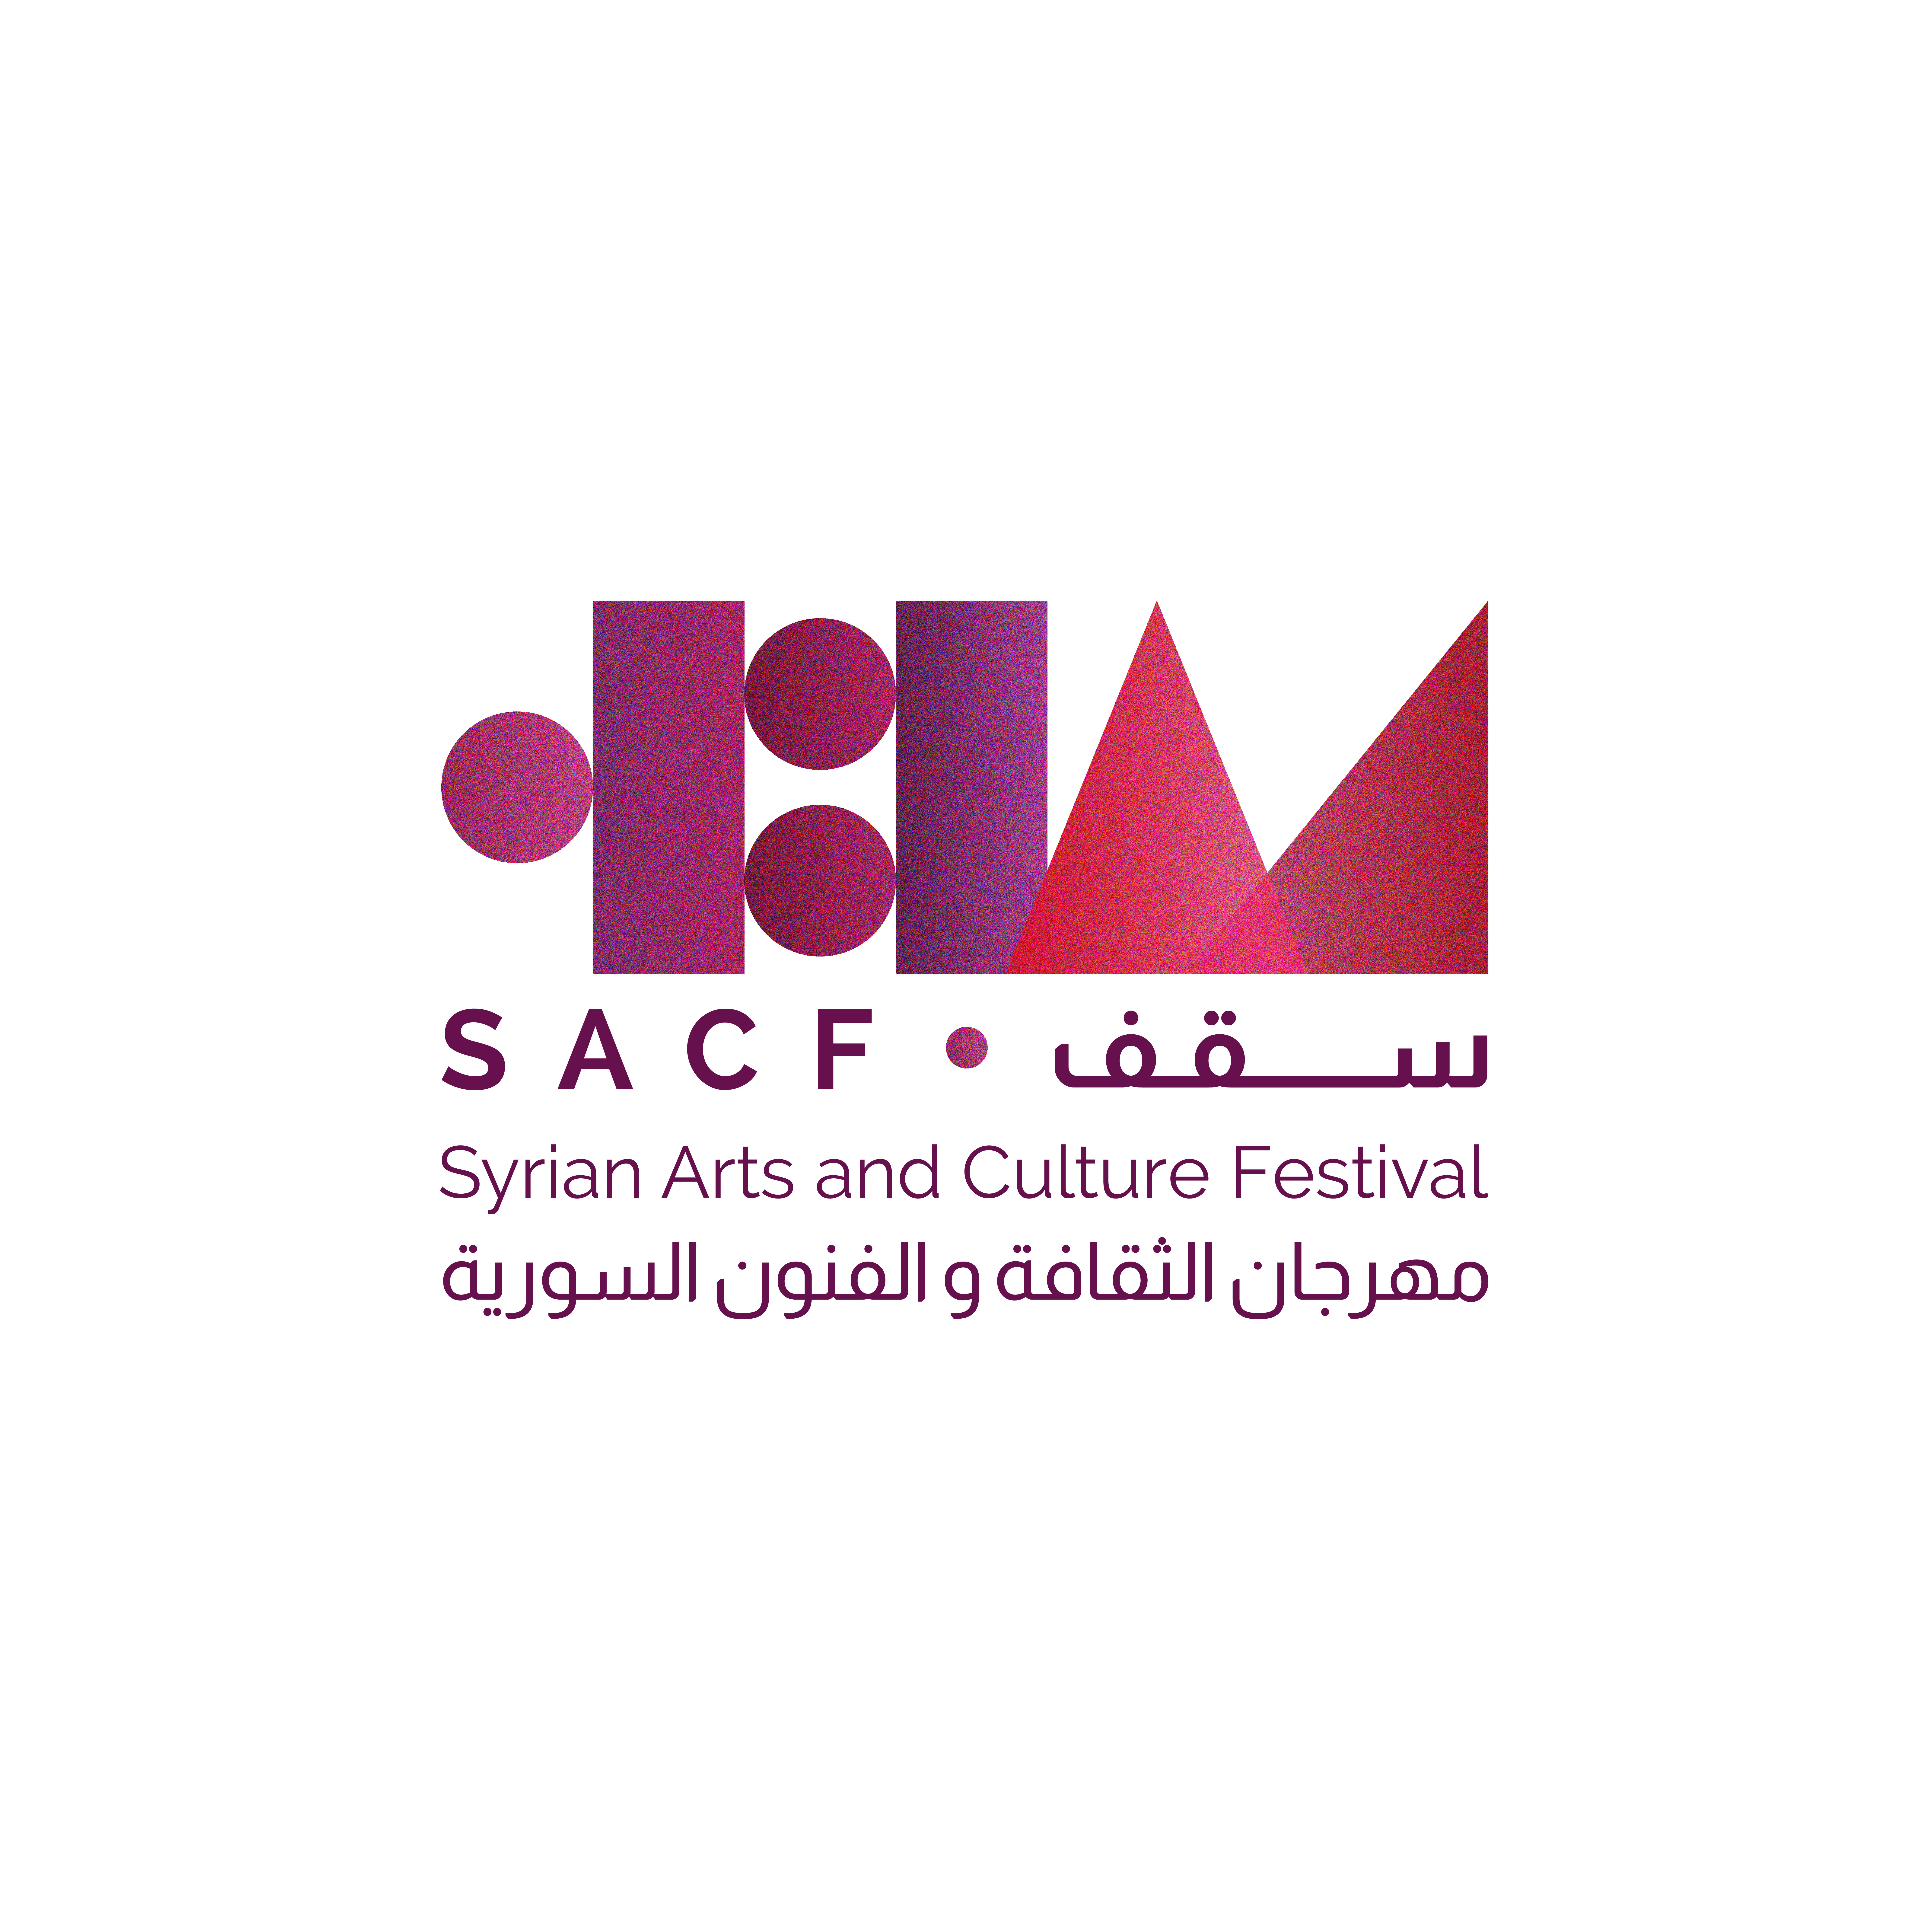 SACF logo